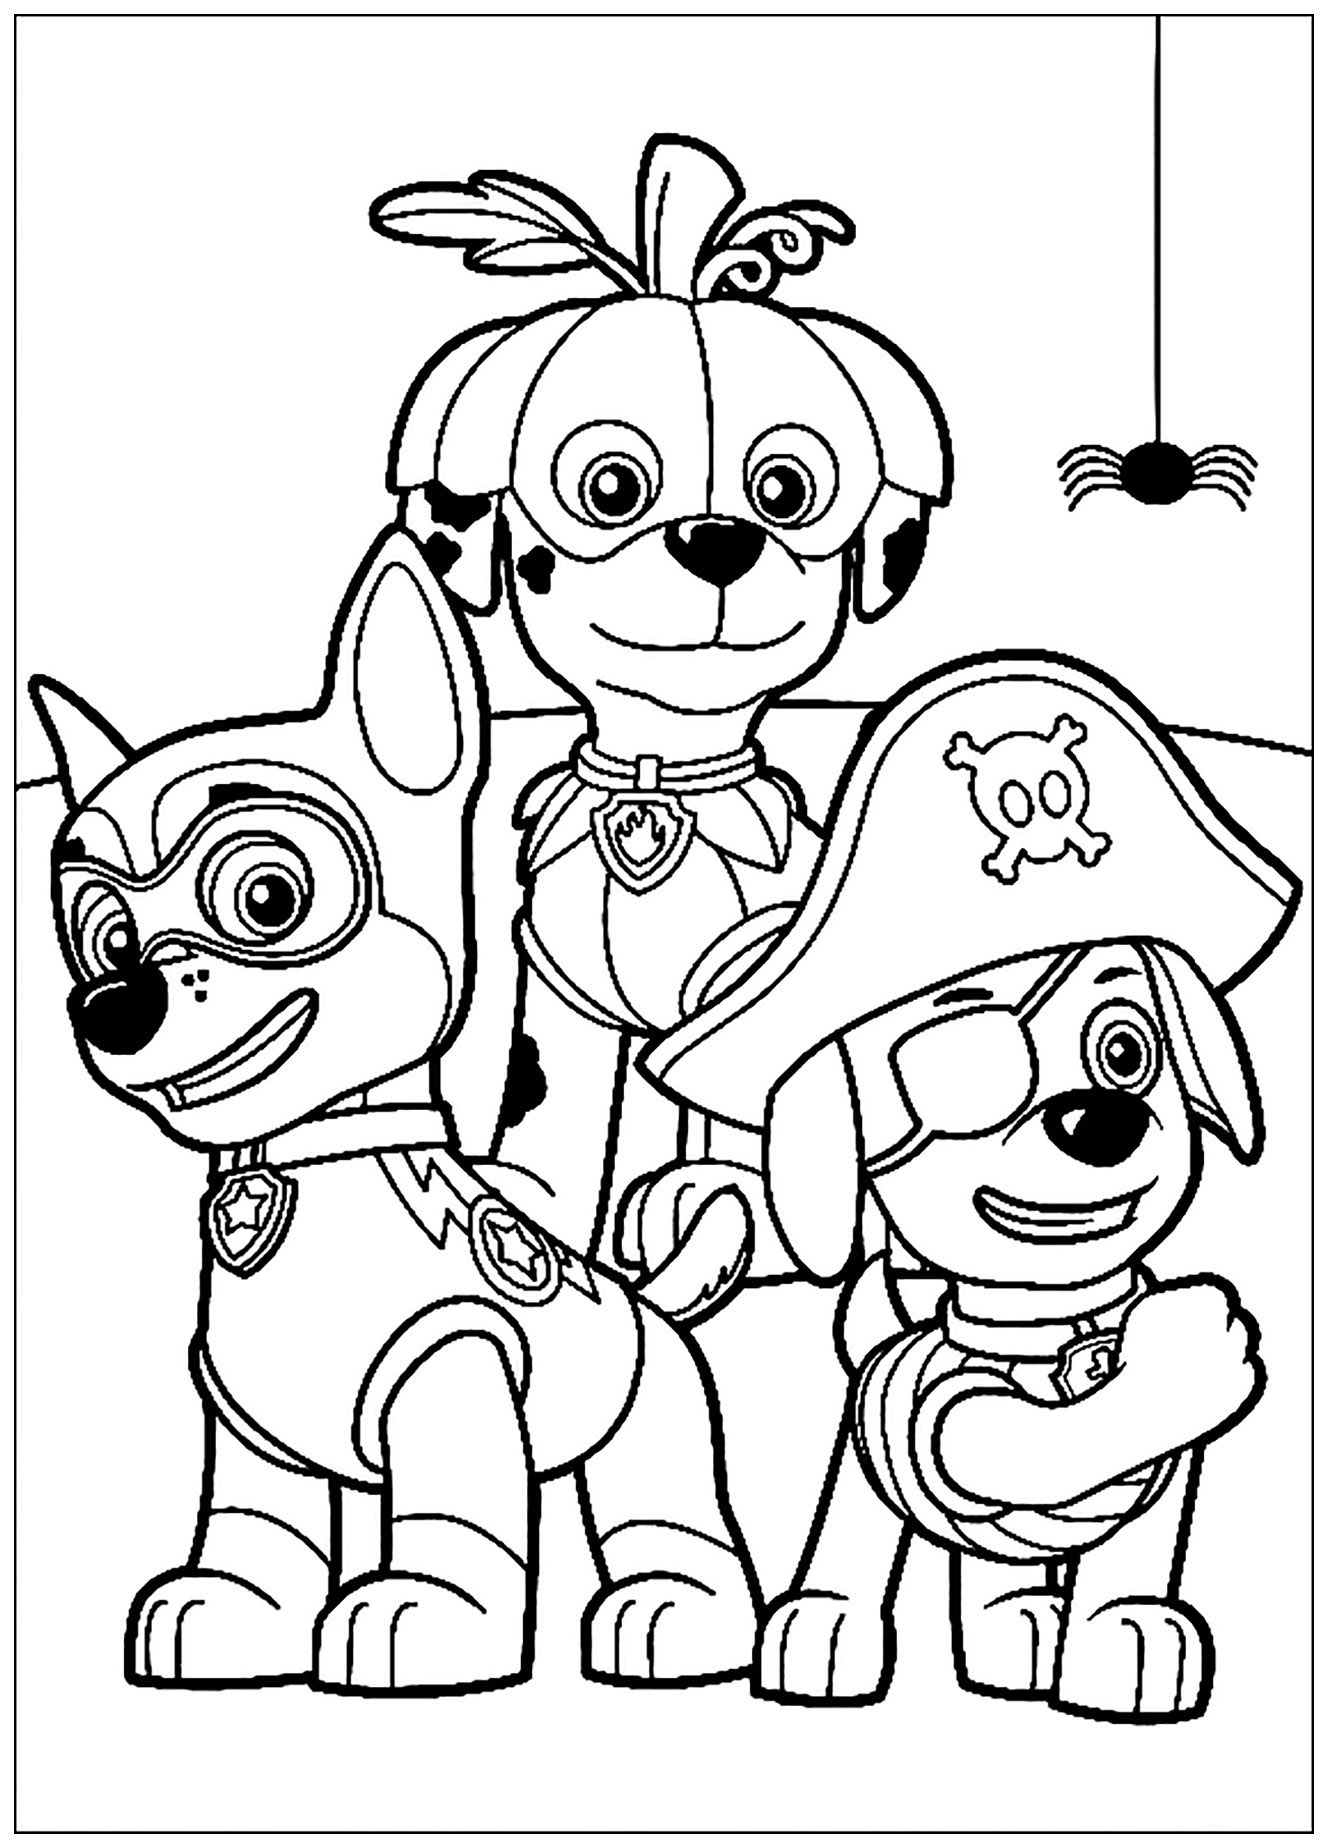 Imagem de patrulha PAW para imprimir e colorir: Três dos cães de patrulha